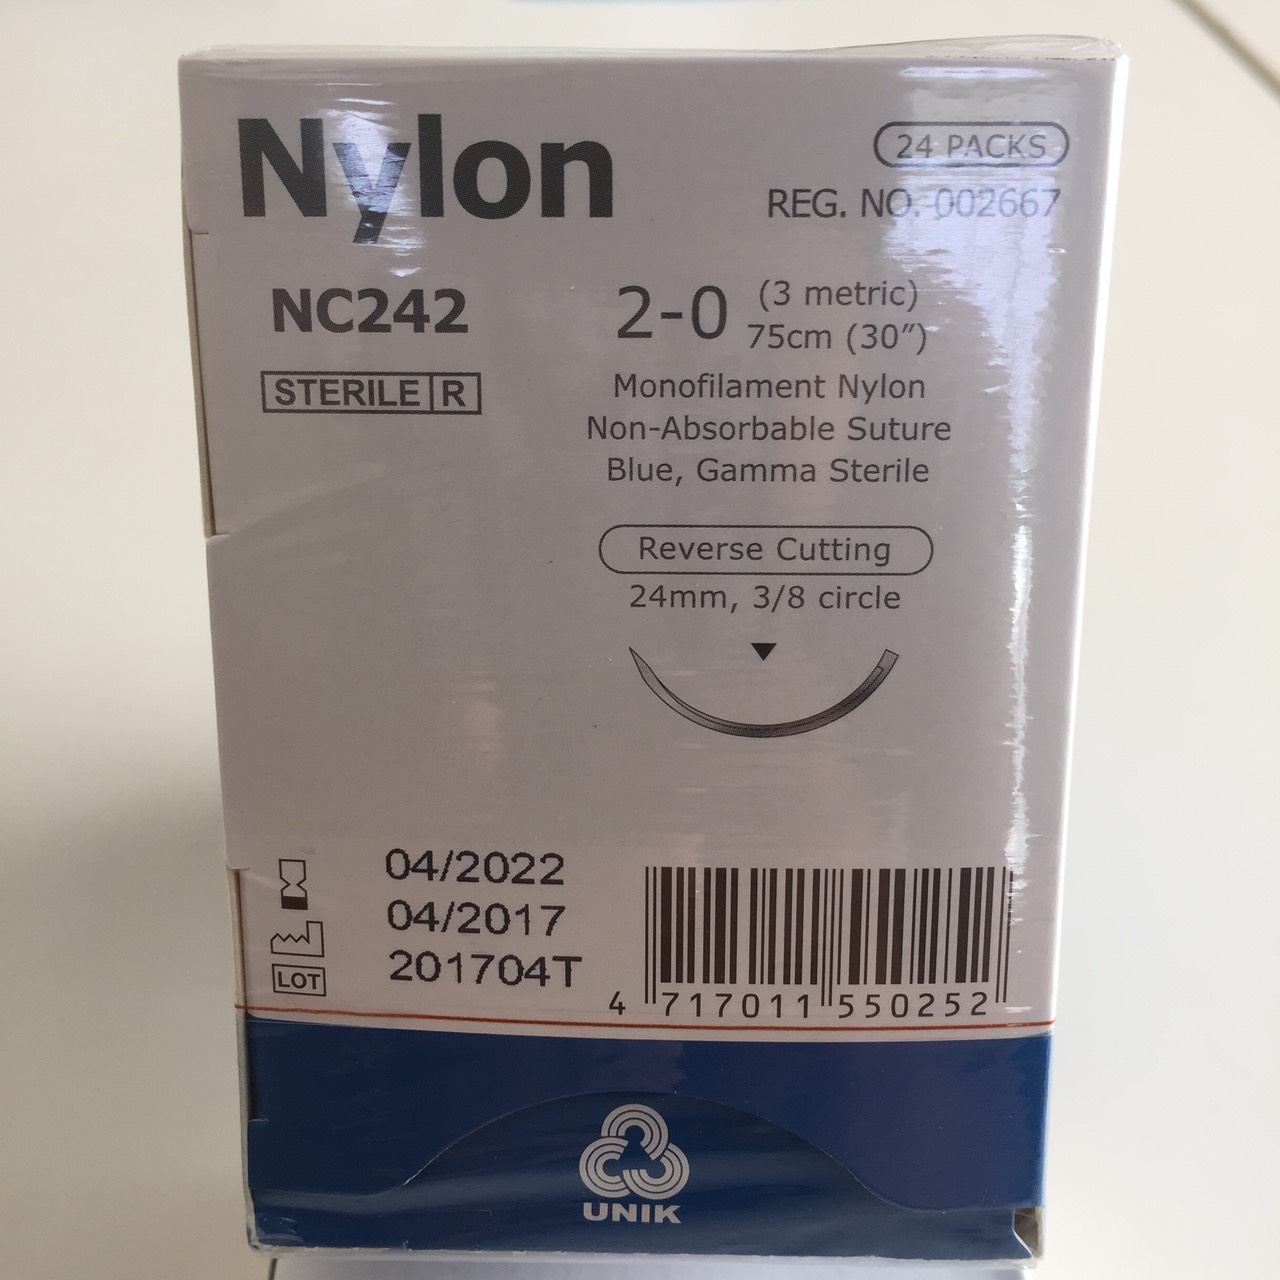 ไหมซอง Nylon NC242 C3/8 24 2/0 ยาว 75 CM (กล่อง 24 ซอง)